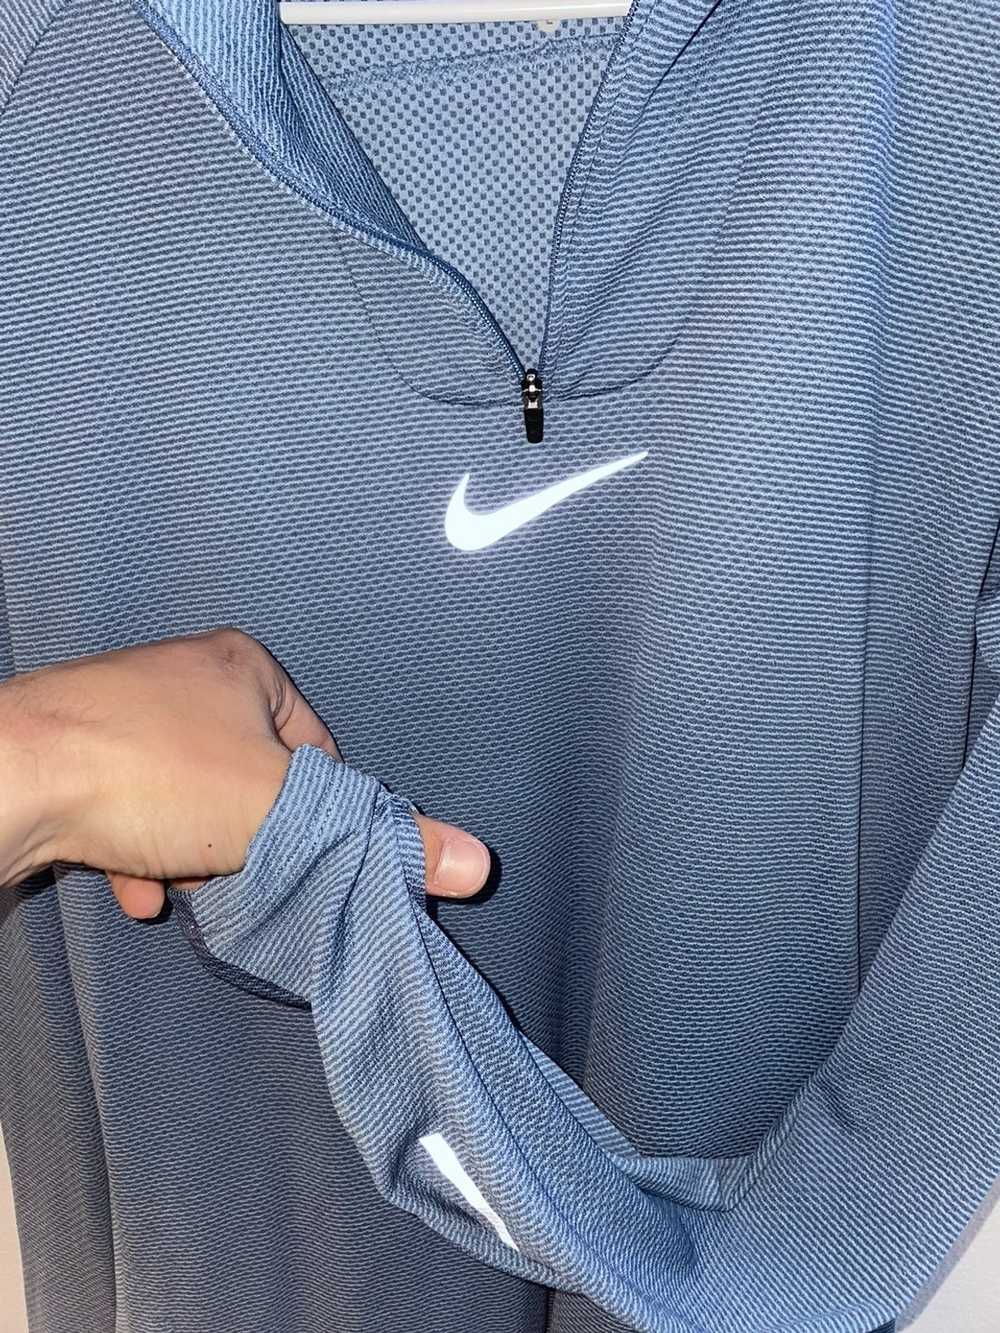 Nike Nike Running L/S shirt - image 4